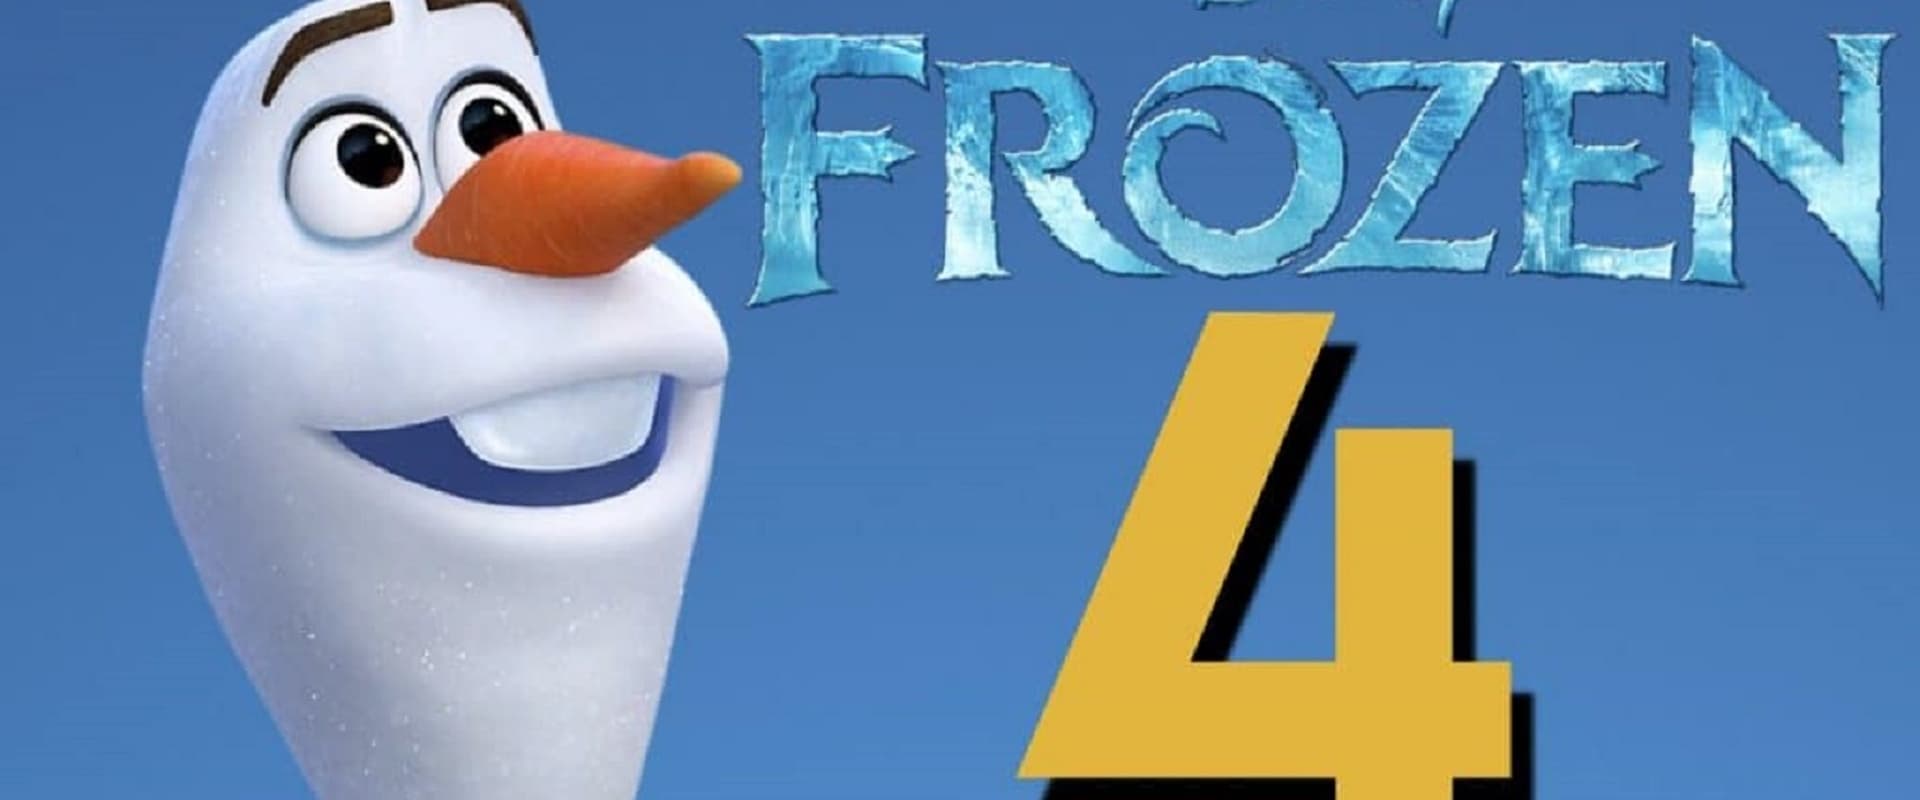 Frozen 4